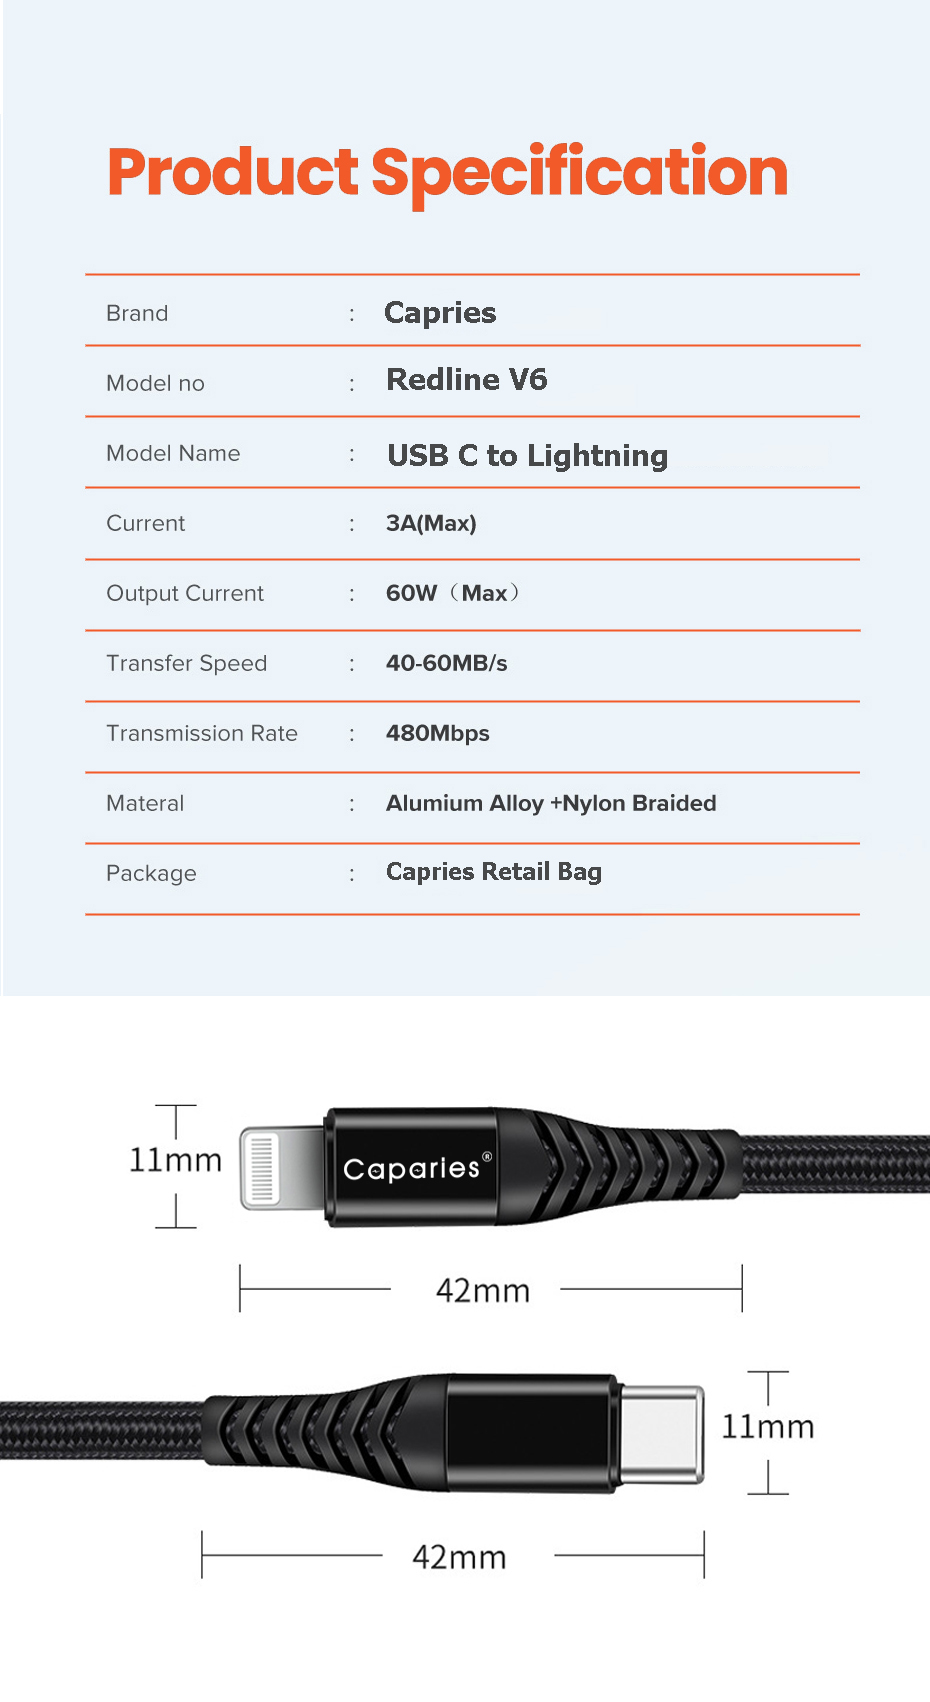 Dây Cáp Sạc Caparies 60W Type C To Lightning Cho iPhone, Airpod, ipad CPRV6 - Hàng Chính Hãng